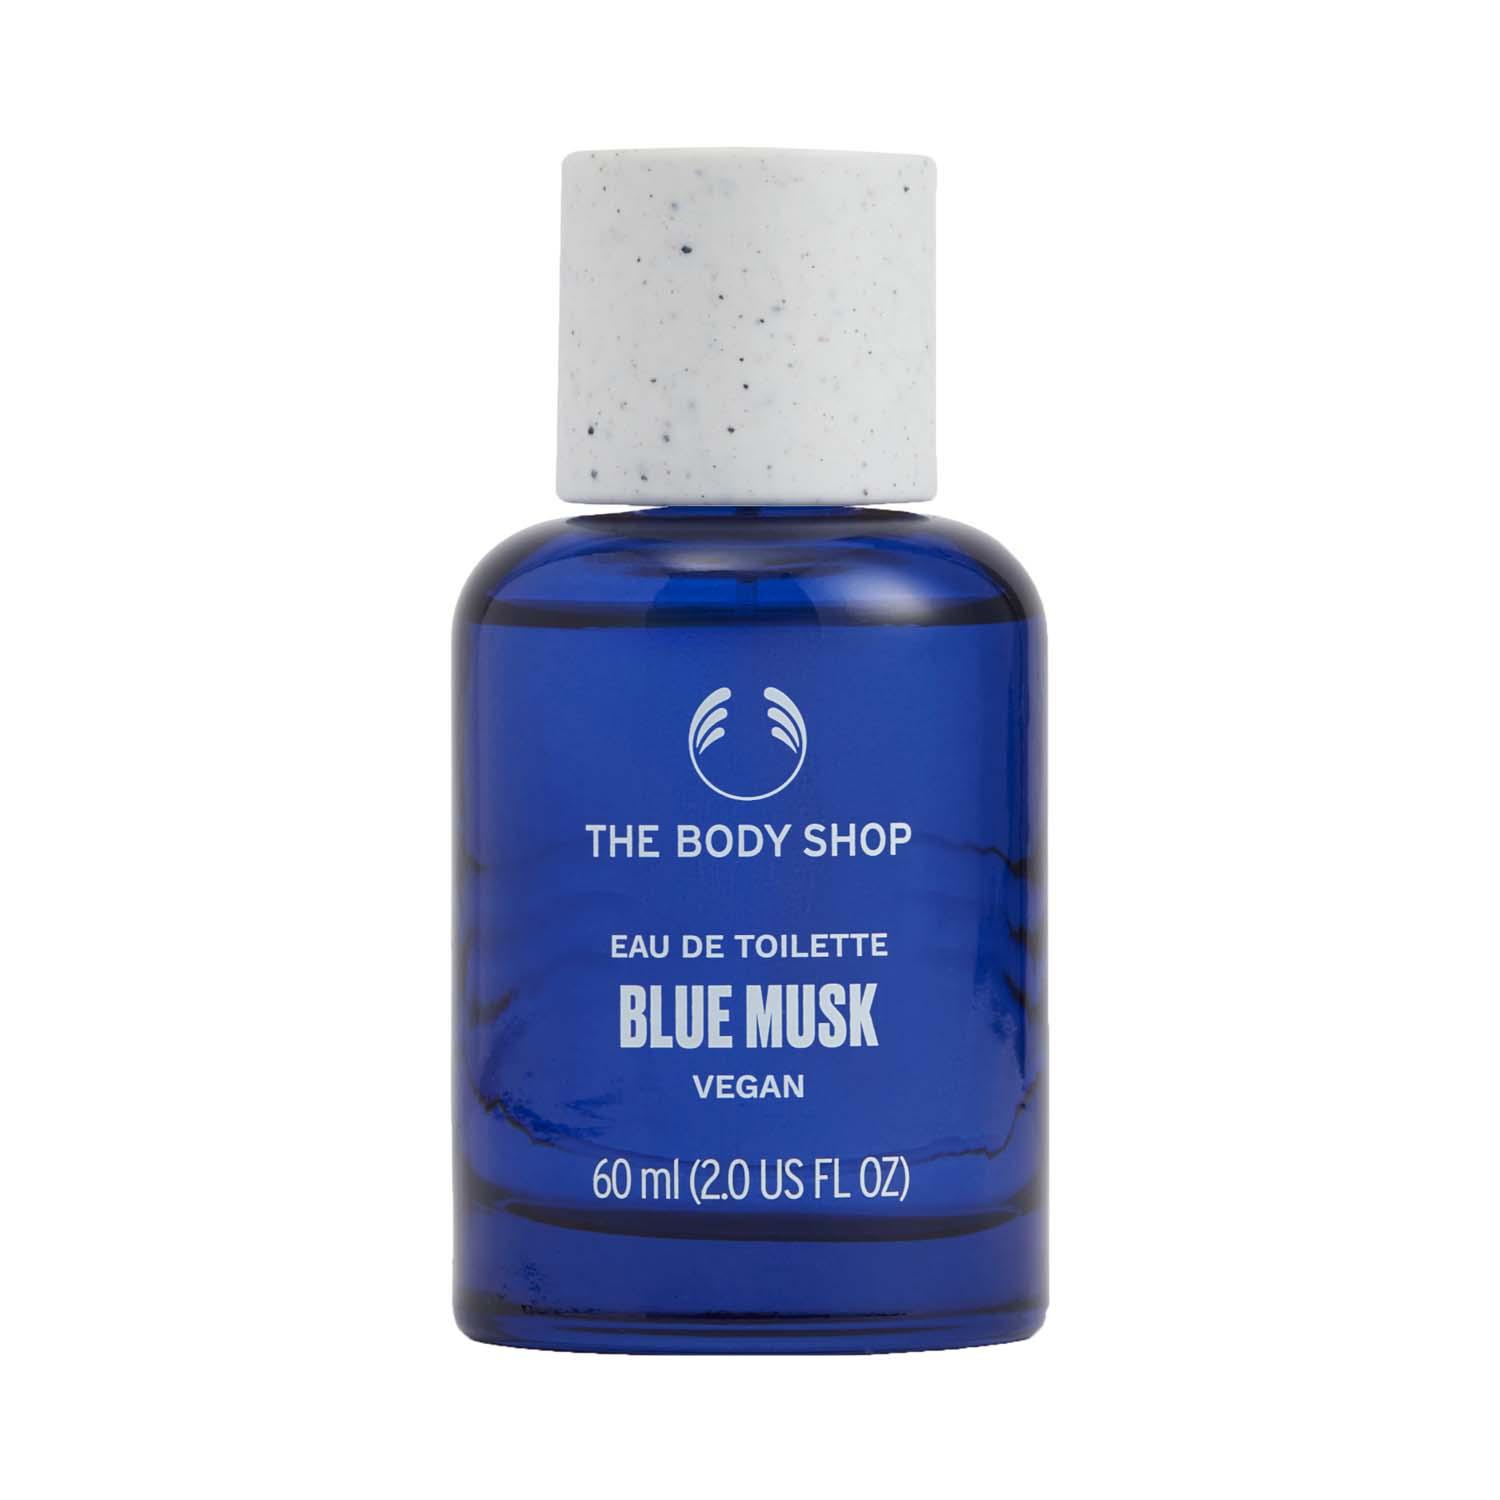 The Body Shop | The Body Shop Blue Musk Eau De Toilette (60ml)